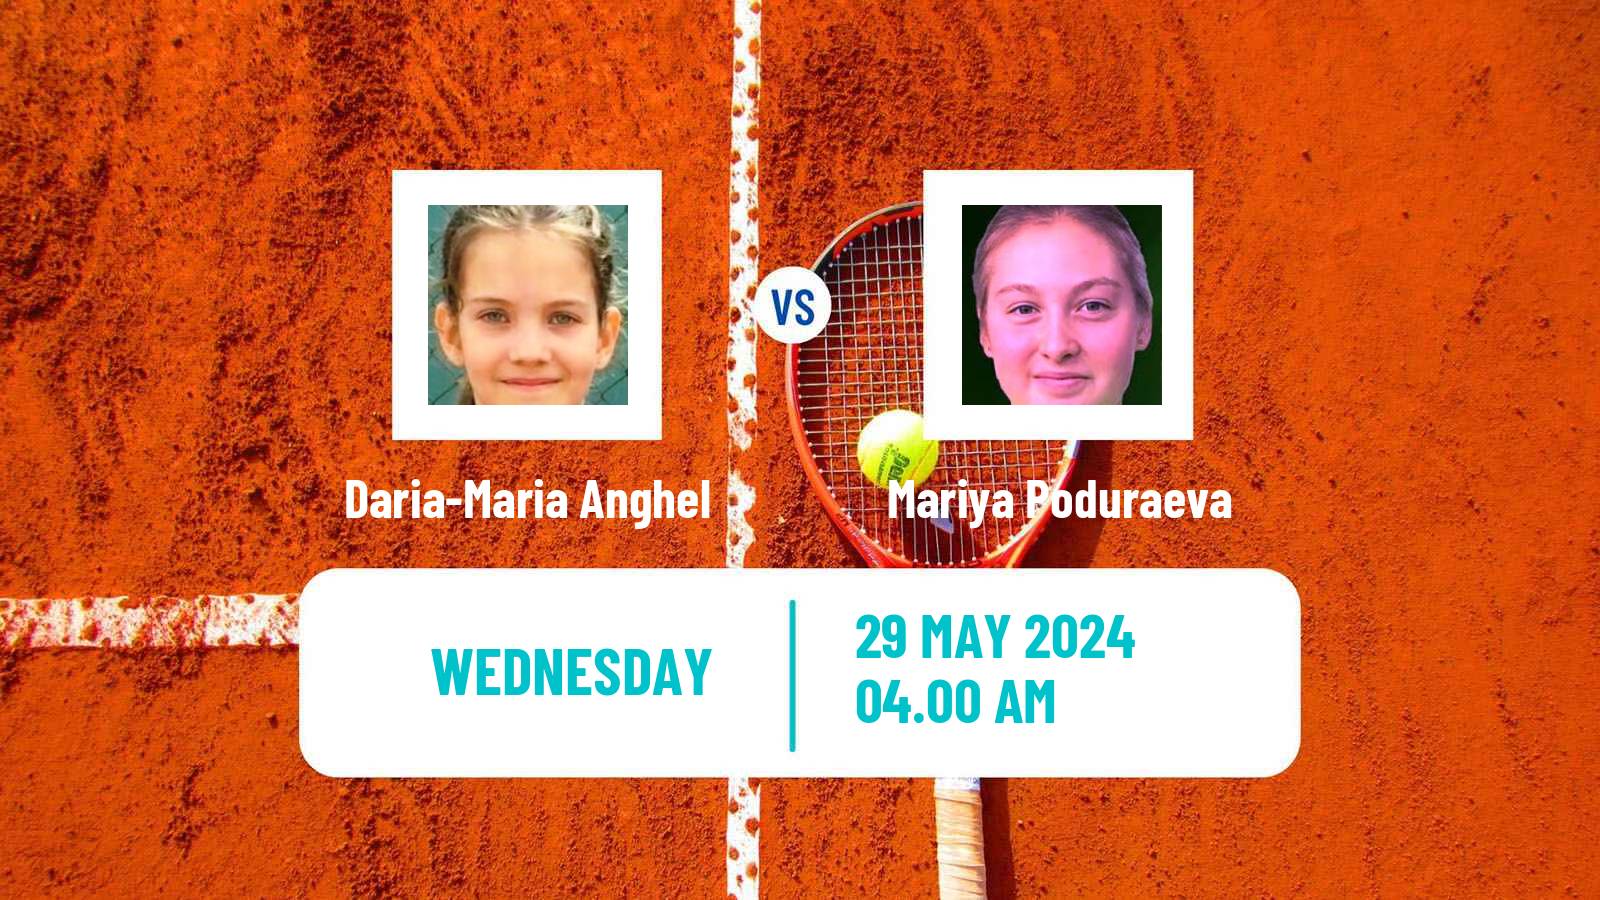 Tennis ITF W15 Galati Women Daria-Maria Anghel - Mariya Poduraeva